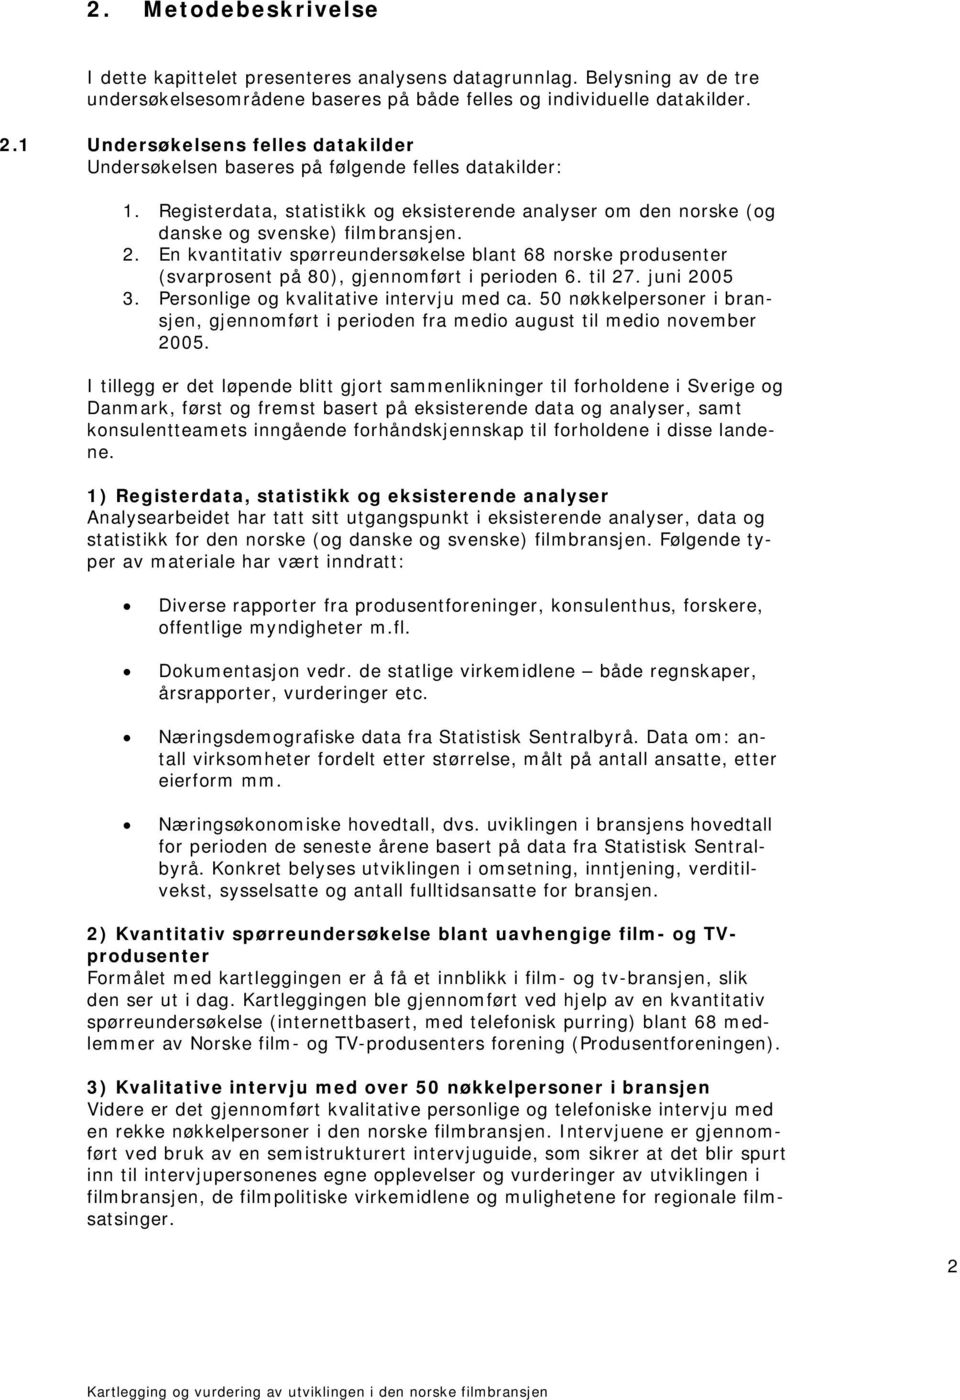 En kvantitativ spørreundersøkelse blant 68 norske produsenter (svarprosent på 80), gjennomført i perioden 6. til 27. juni 2005 3. Personlige og kvalitative intervju med ca.